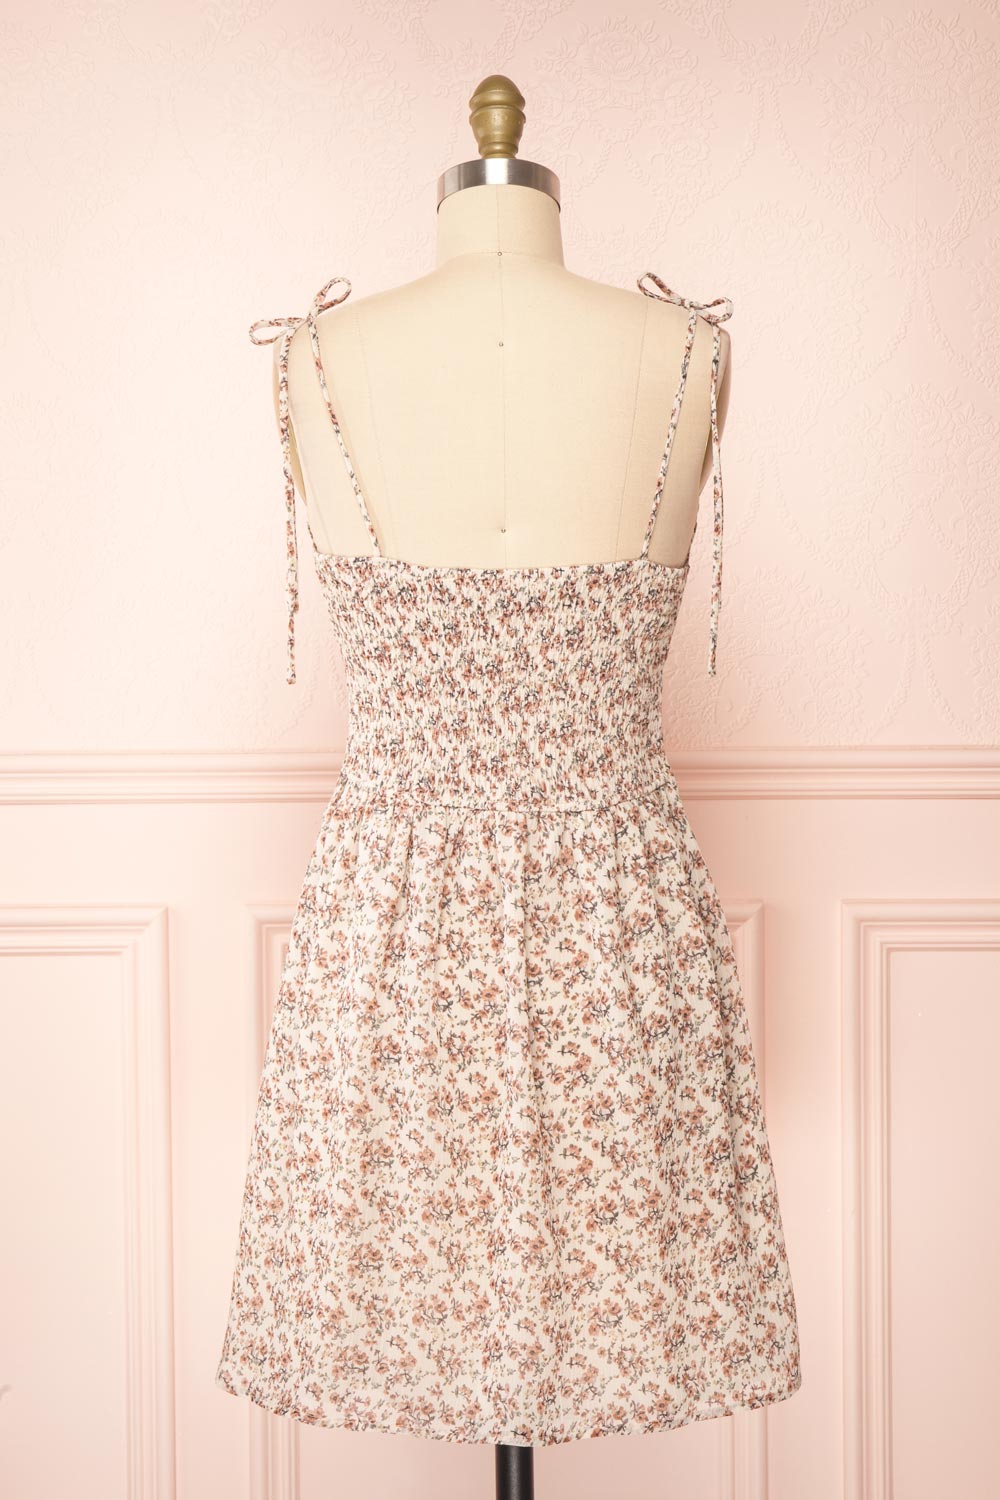 Sazah Floral Midi Dress w/ Adjustable Straps | Boutique 1861 back view